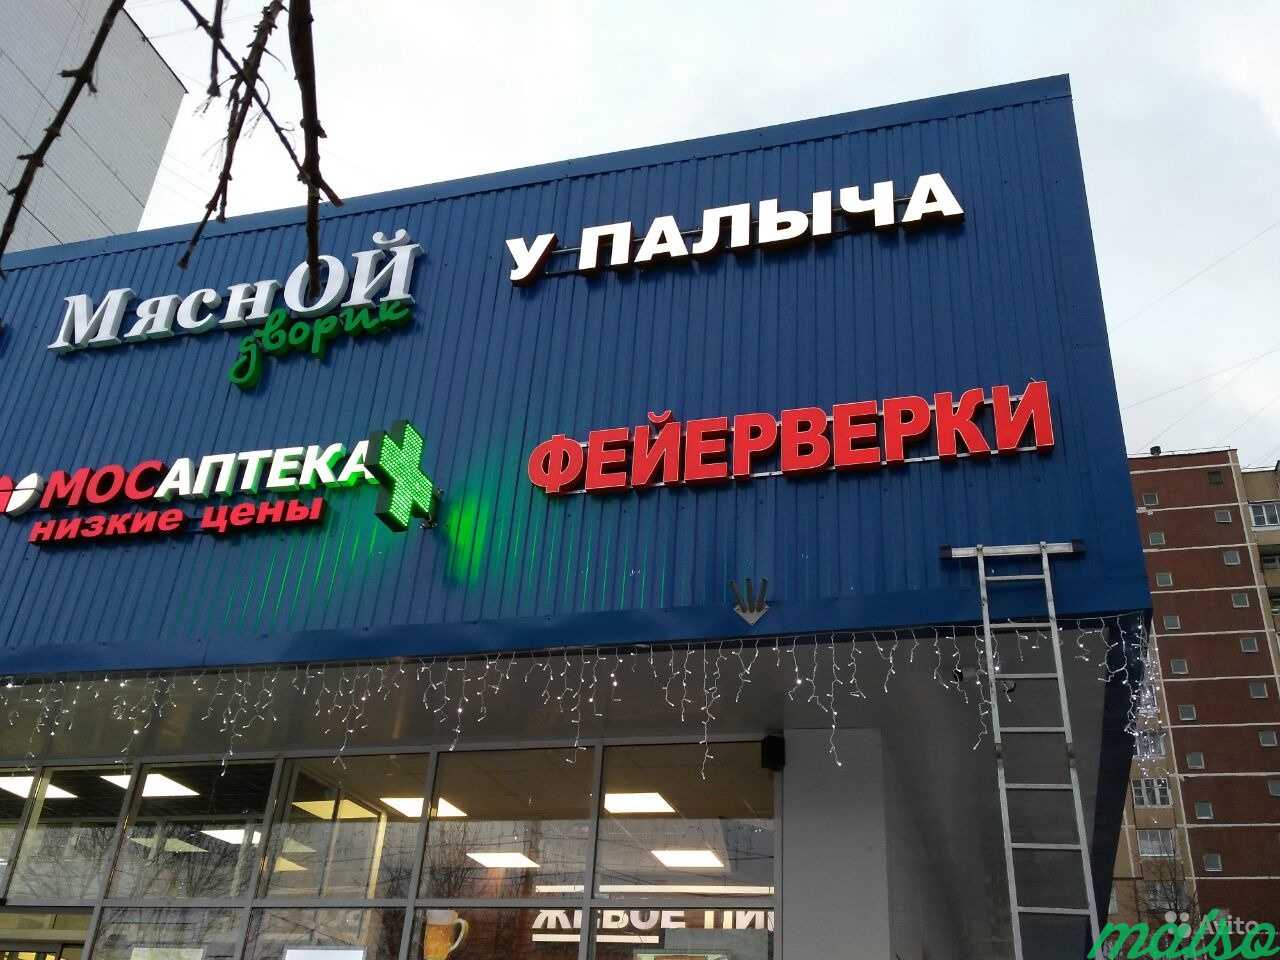 Вывеска фейерверки красная с кантиком в Москве. Фото 2